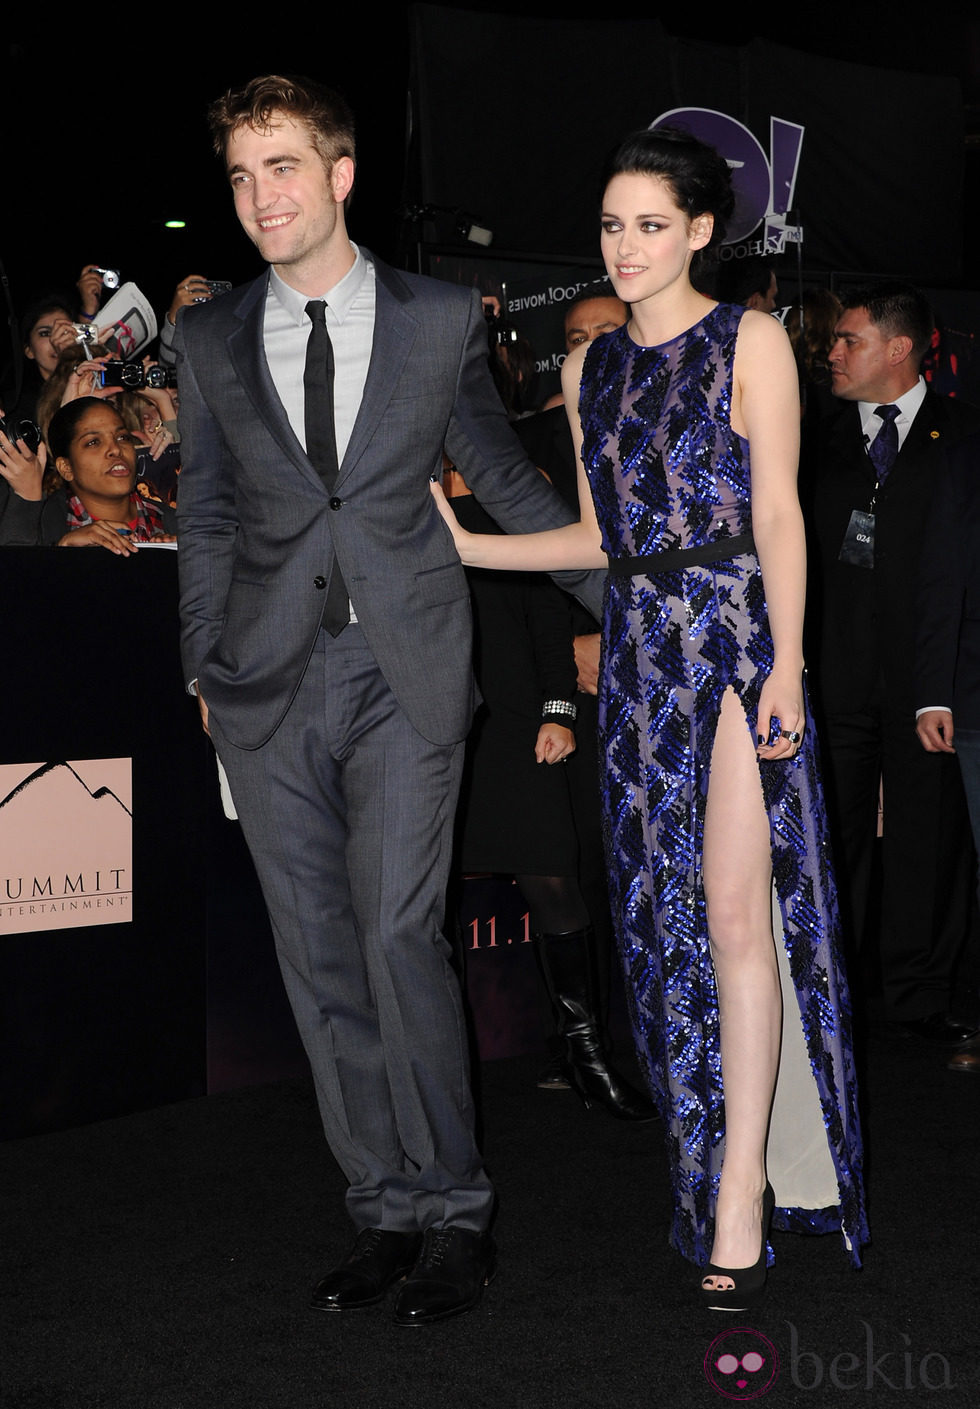 Robert Pattinson y Kristen Stewart en el estreno de 'Amanecer. Parte 1' en Los Ángeles